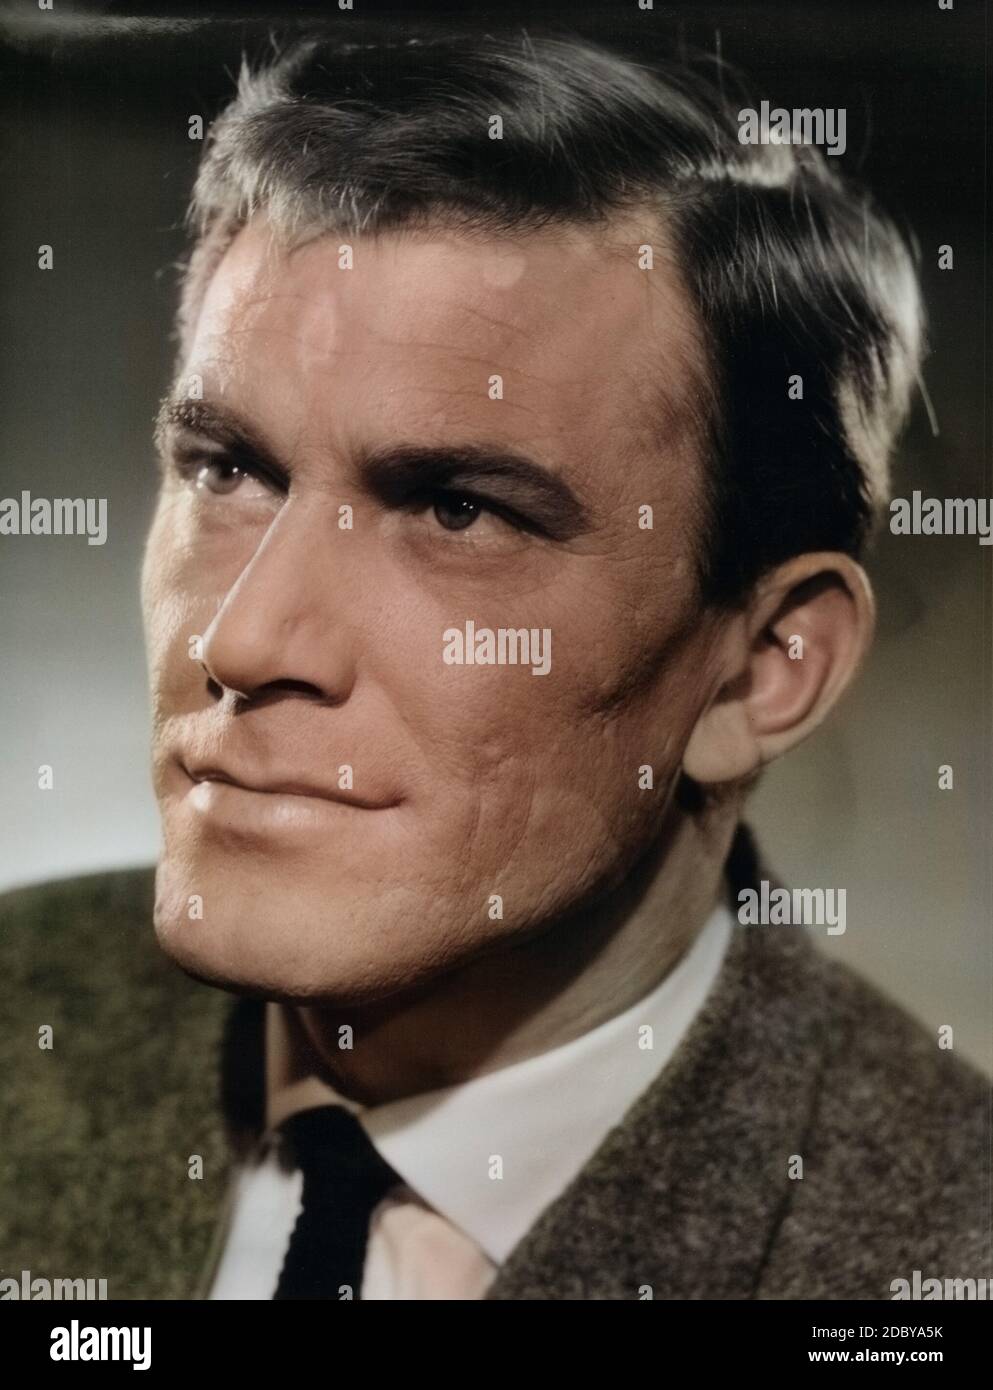 Hellmut Lange, deutscher Wis und Synchronsprecher, Deutschland um 1969. Deutsche Schauspieler und Vertonung Schauspieler Hellmut Lange, Deutschland um 1969. Stockfoto